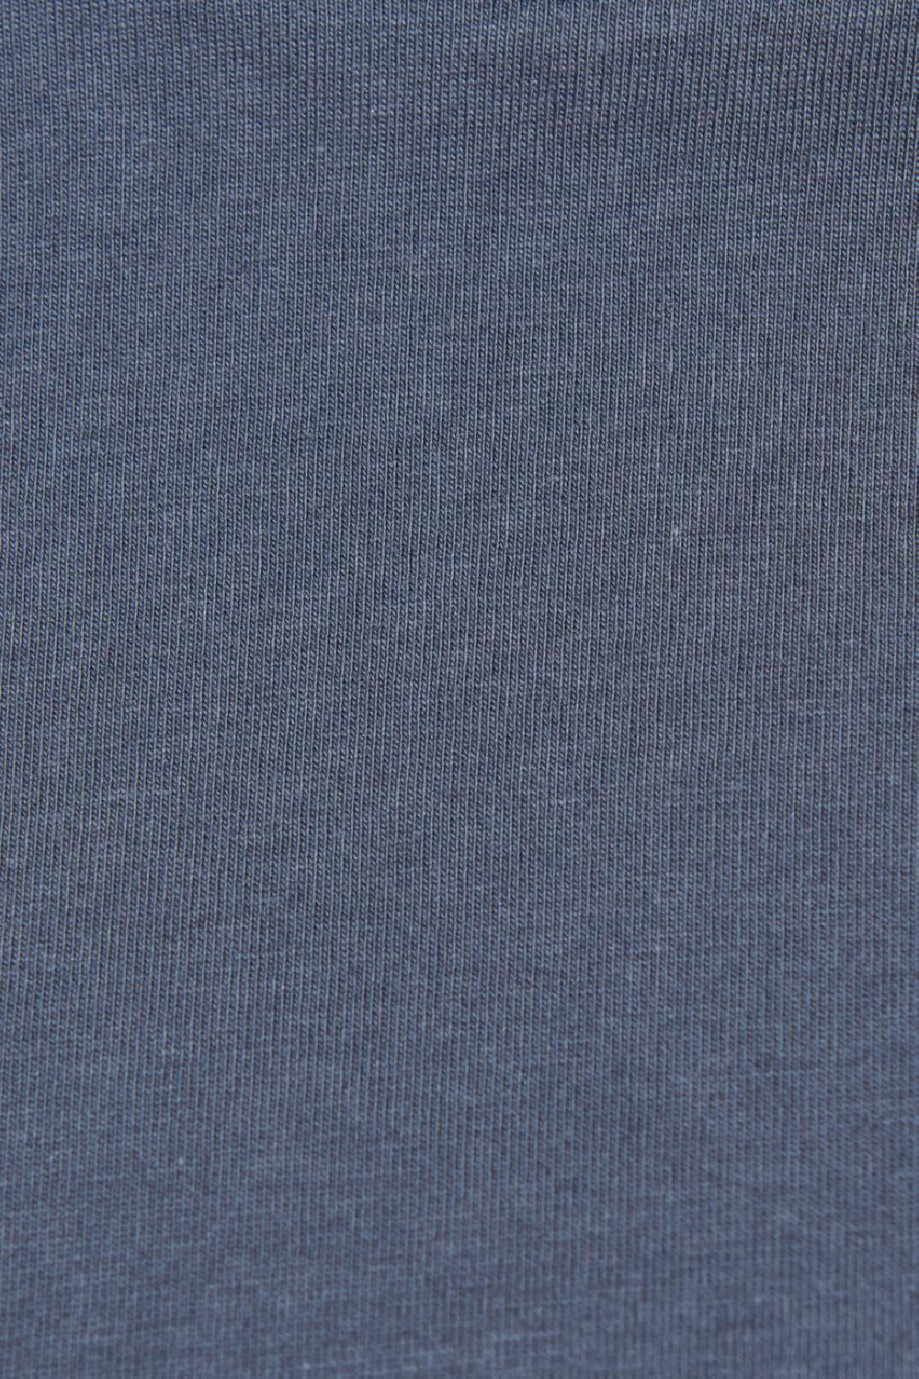 Camiseta unicolor en algodón con manga corta y cuello redondo